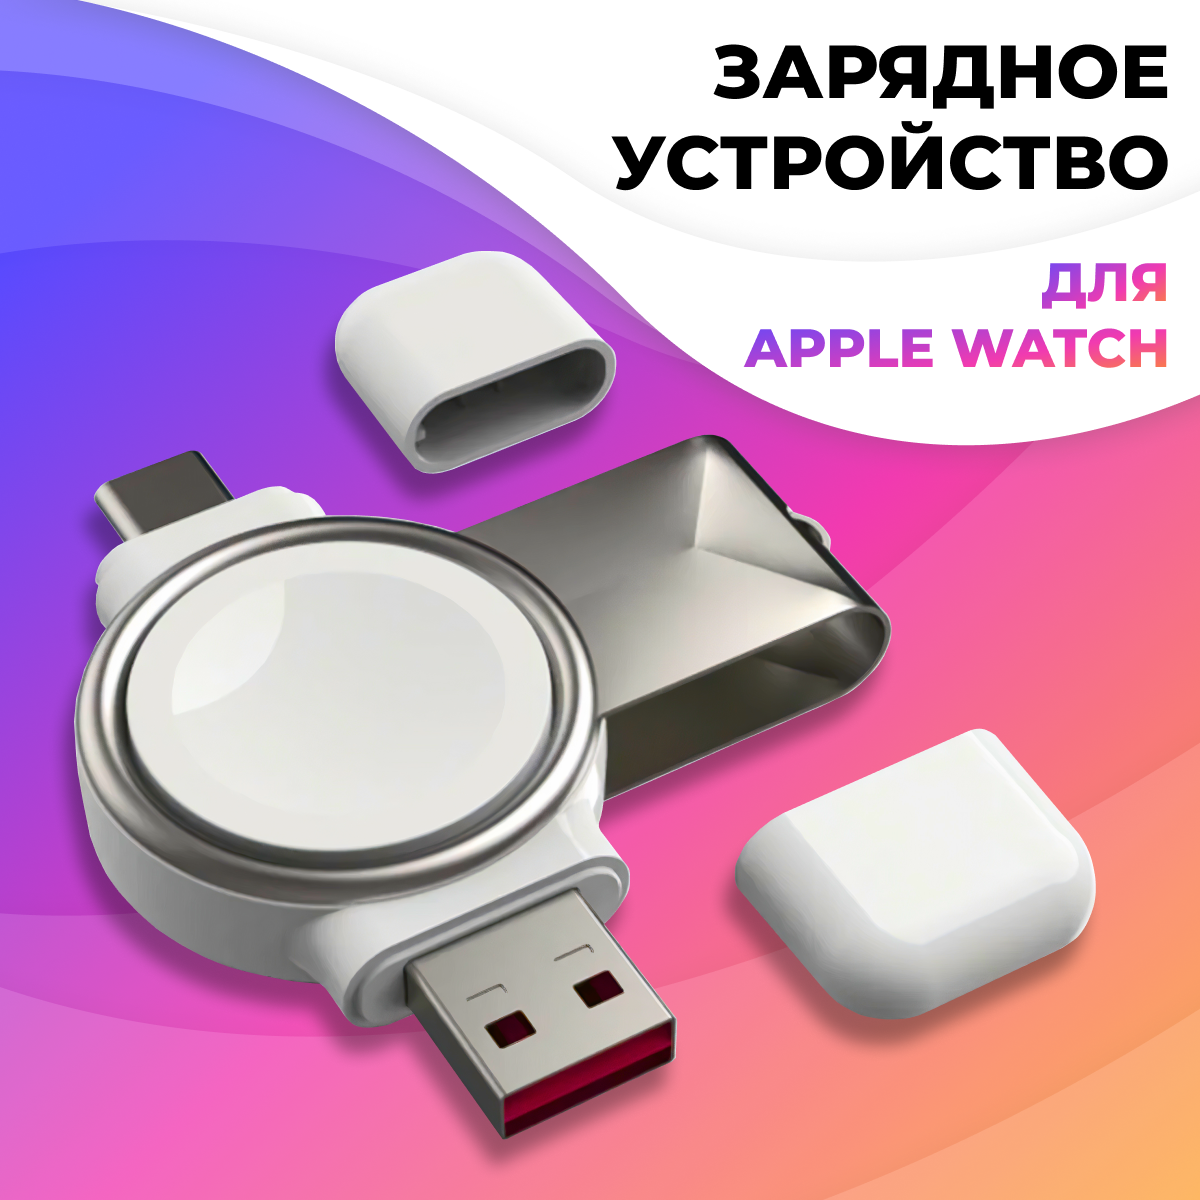 Беспроводная зарядка для Apple Watch USB Type-C - USB / Зарядное устройство ЮСБ Тайп Си - ЮСБ для умных смарт часов Эпл Вотч / Белая